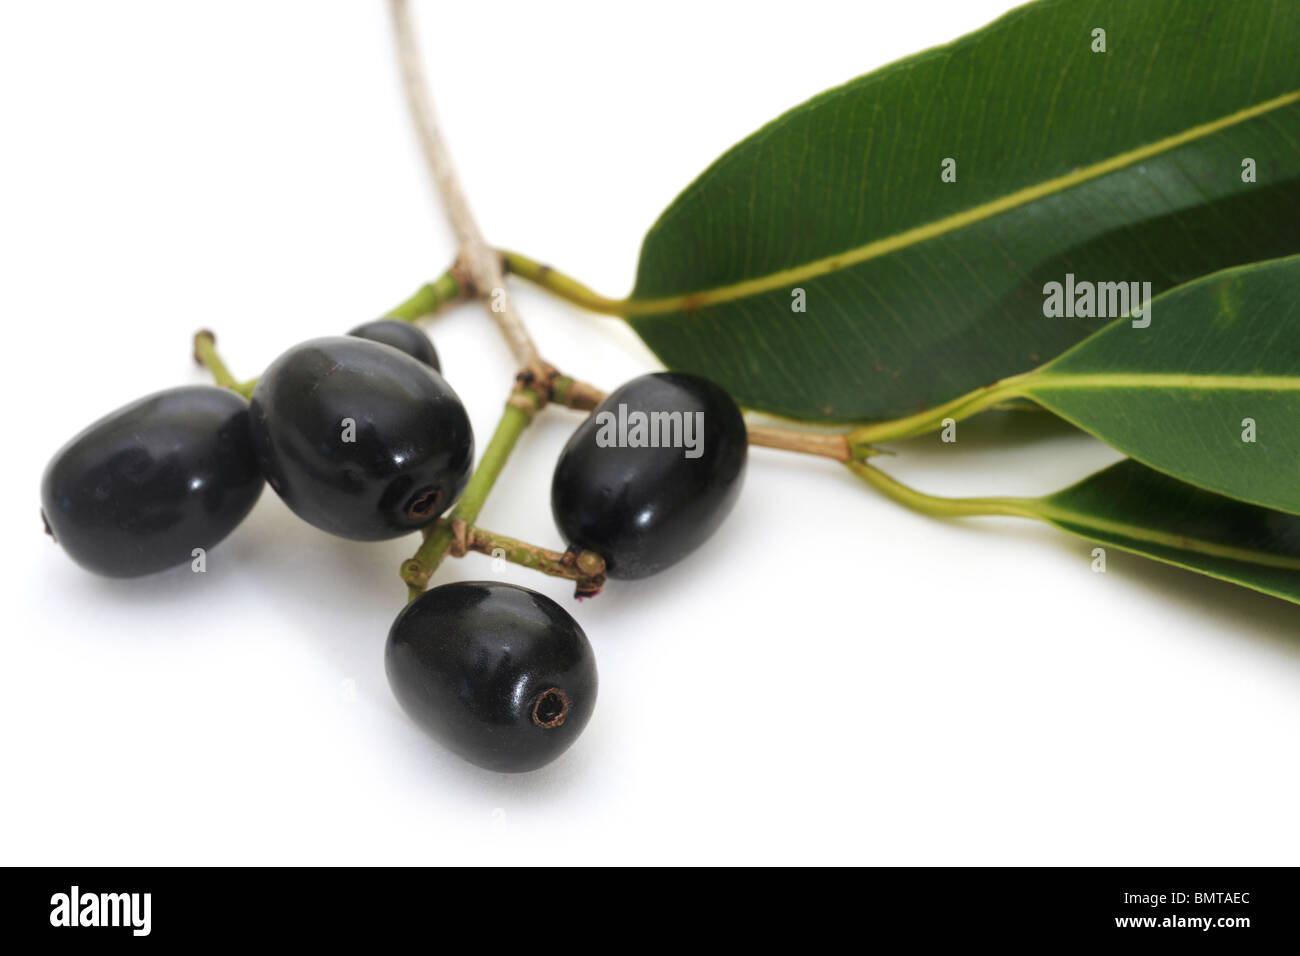 Ripe Jambul (Syzygium cumini) fruit with leaves Stock Photo